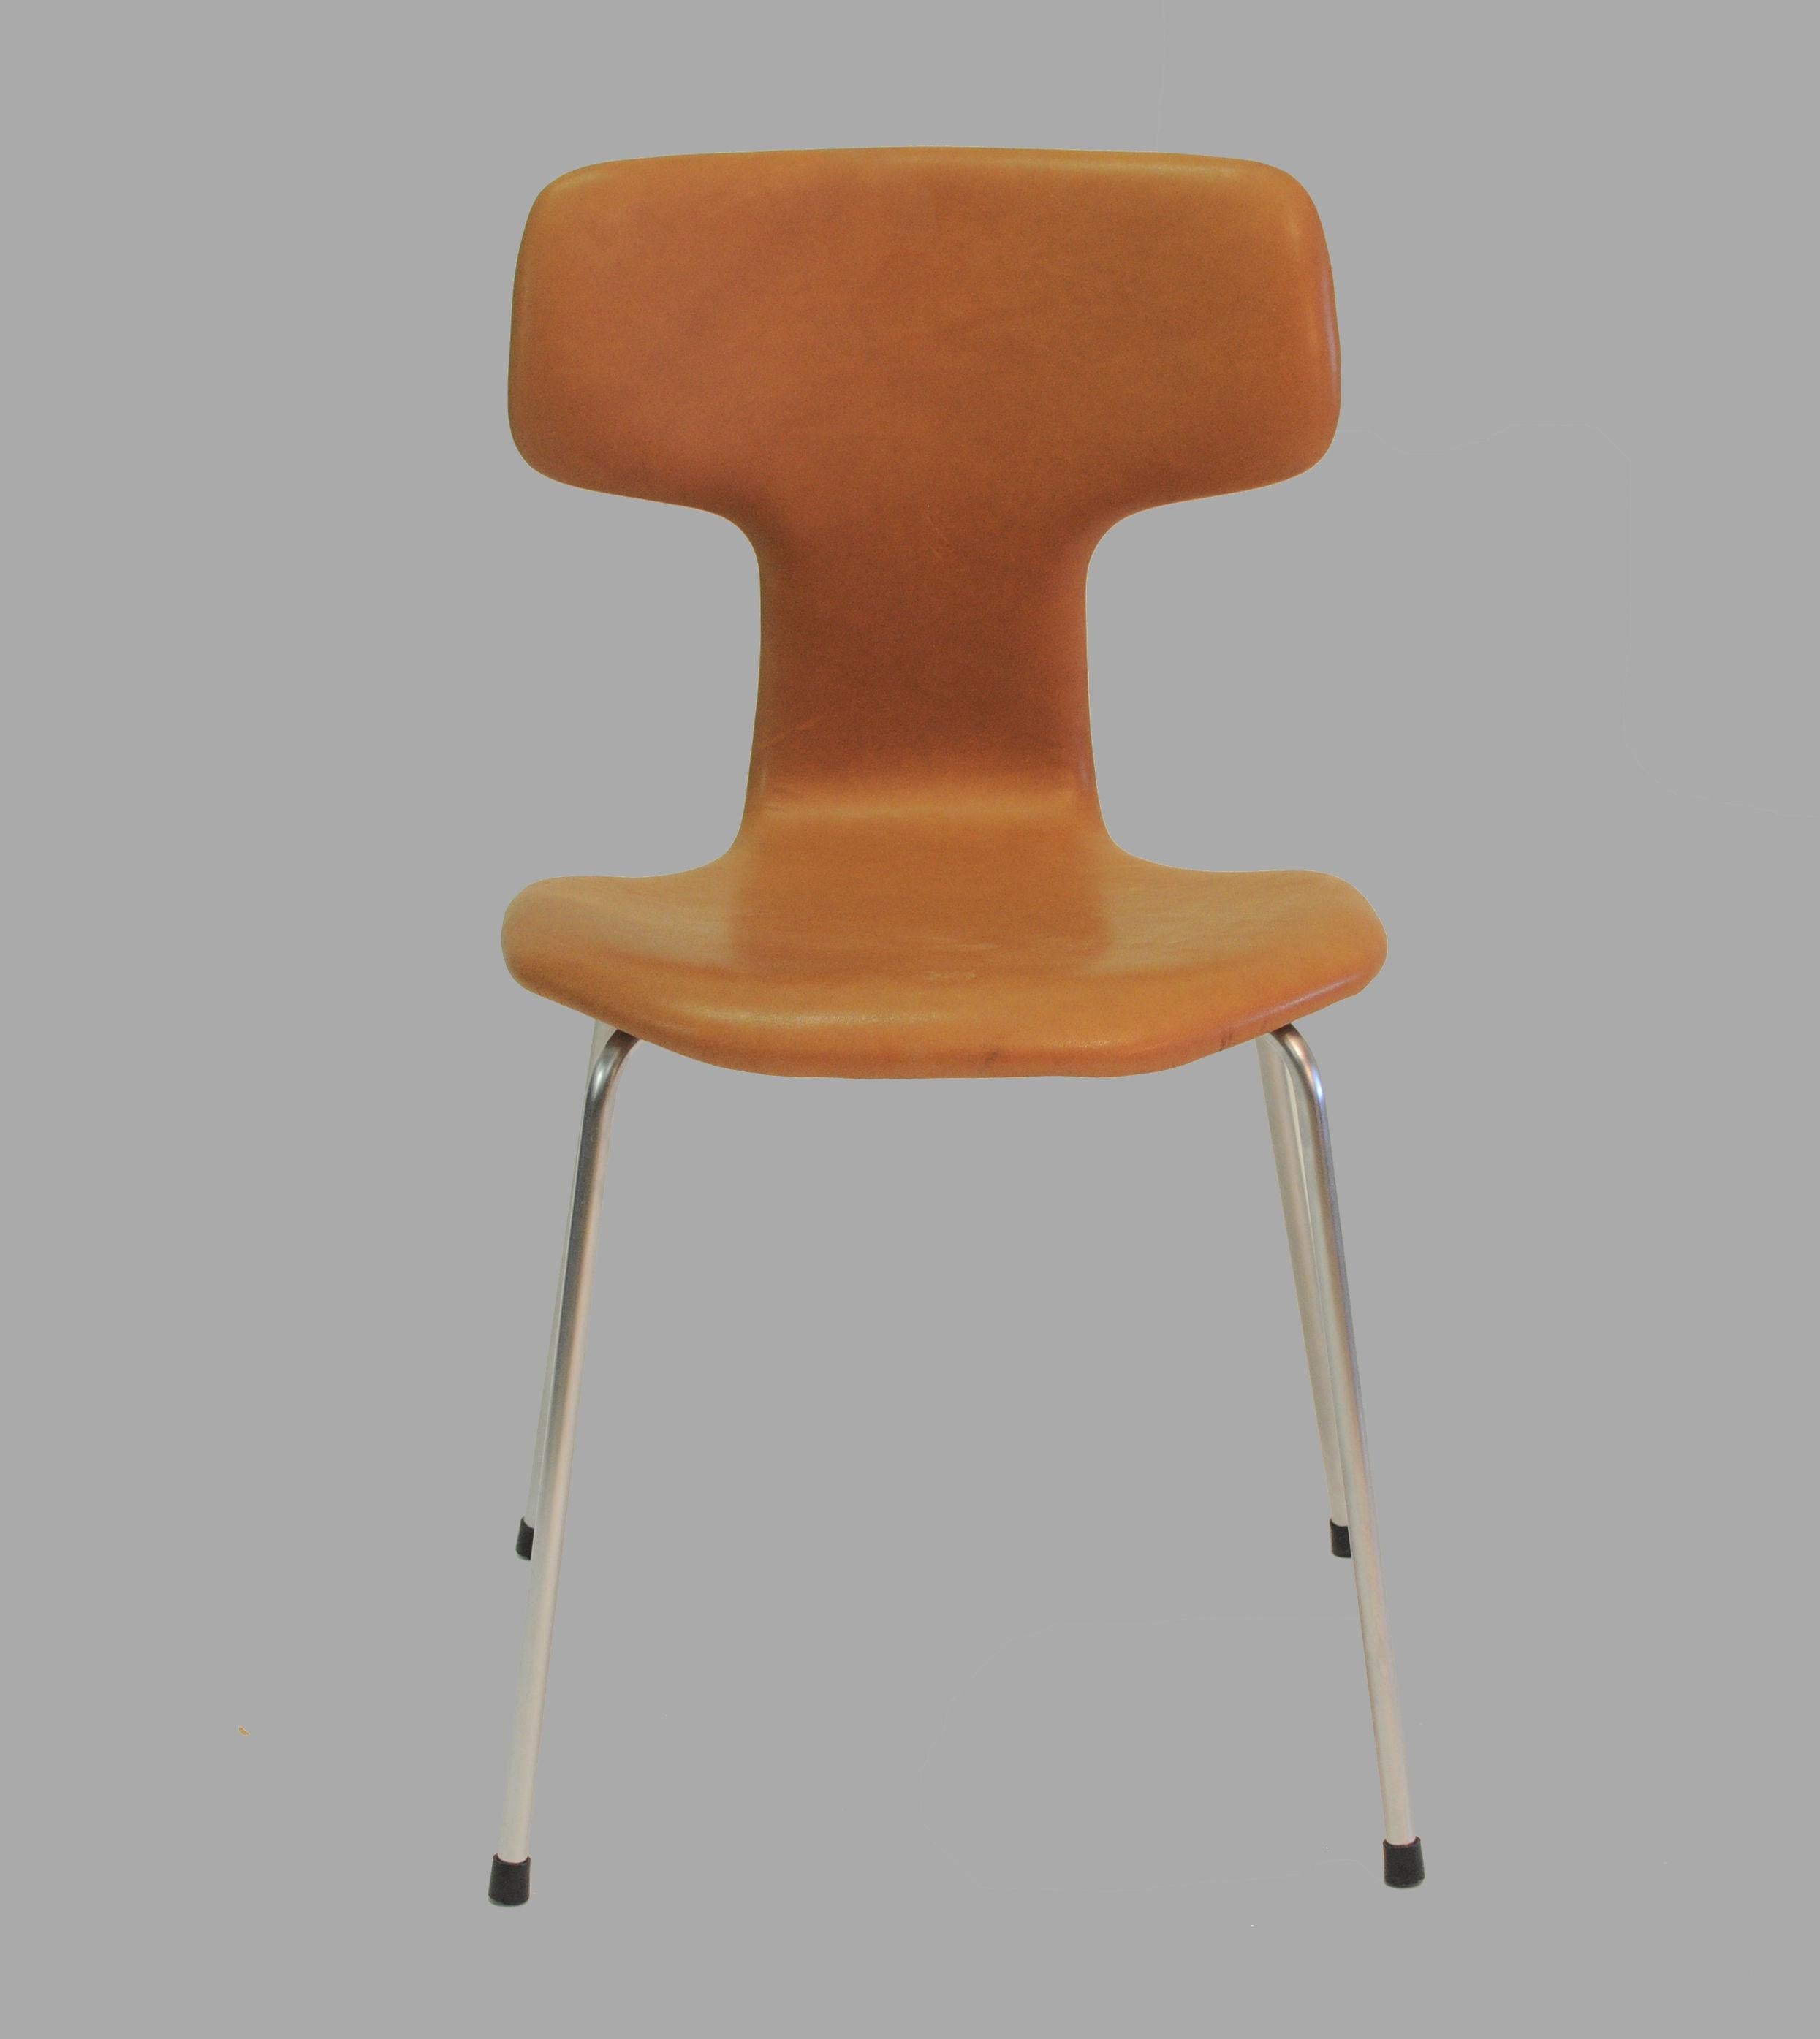 Ensemble de huit chaises danoises vintage retapissées, modèle 3103 d'Arne Jacobsen, appelées 